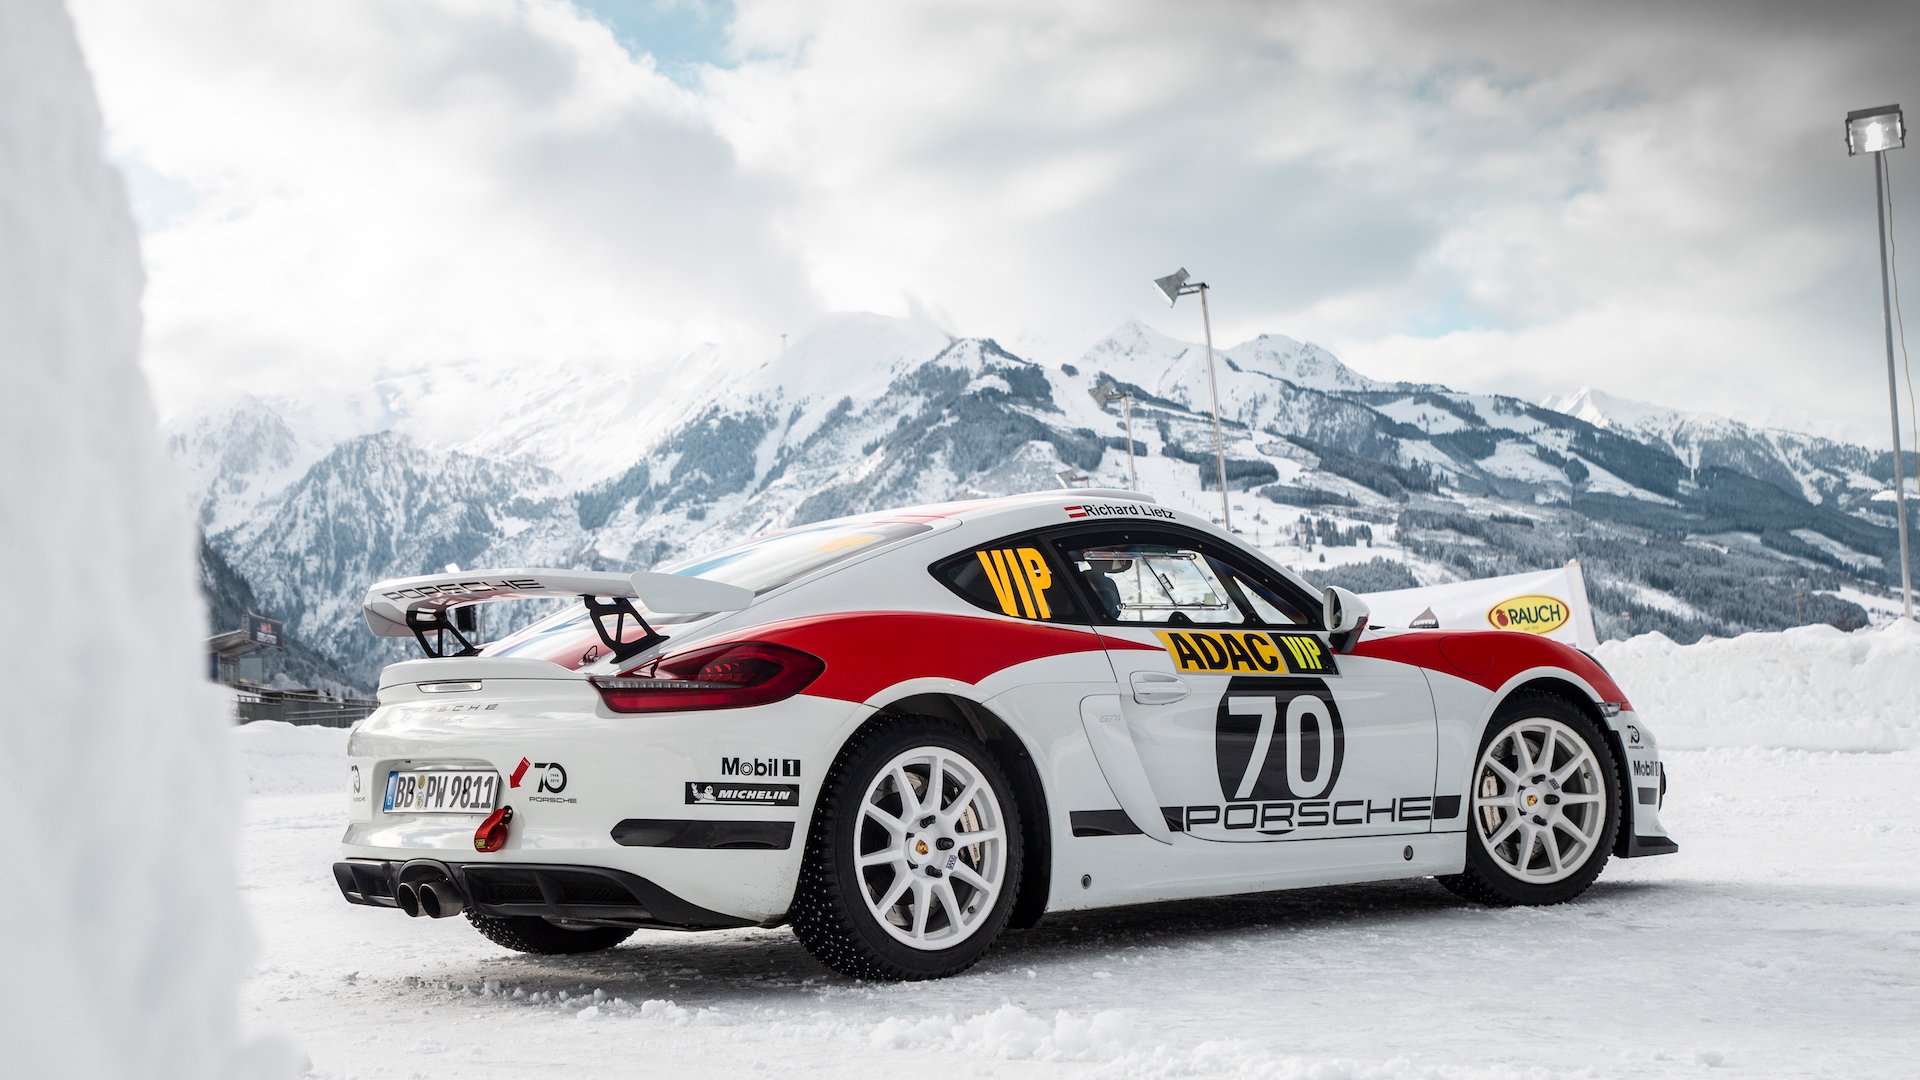 Porsche 718 Cayman rally car concept, Austria